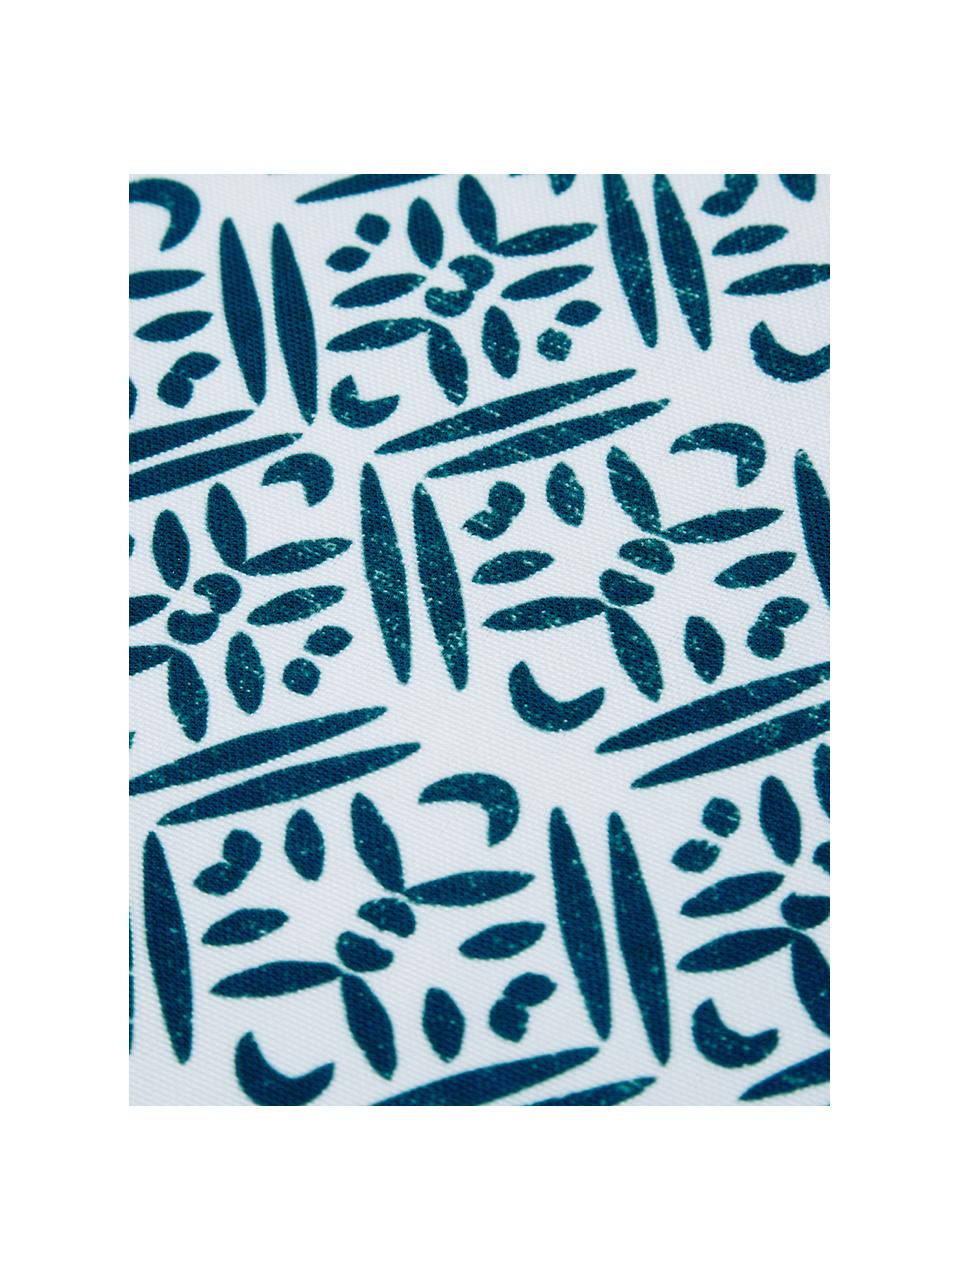 Wasserabweisende Kunststoff-Tischsets Fishbone, 2 Stück, Polyester, Weiß, Blautöne, B 33 x L 48 cm